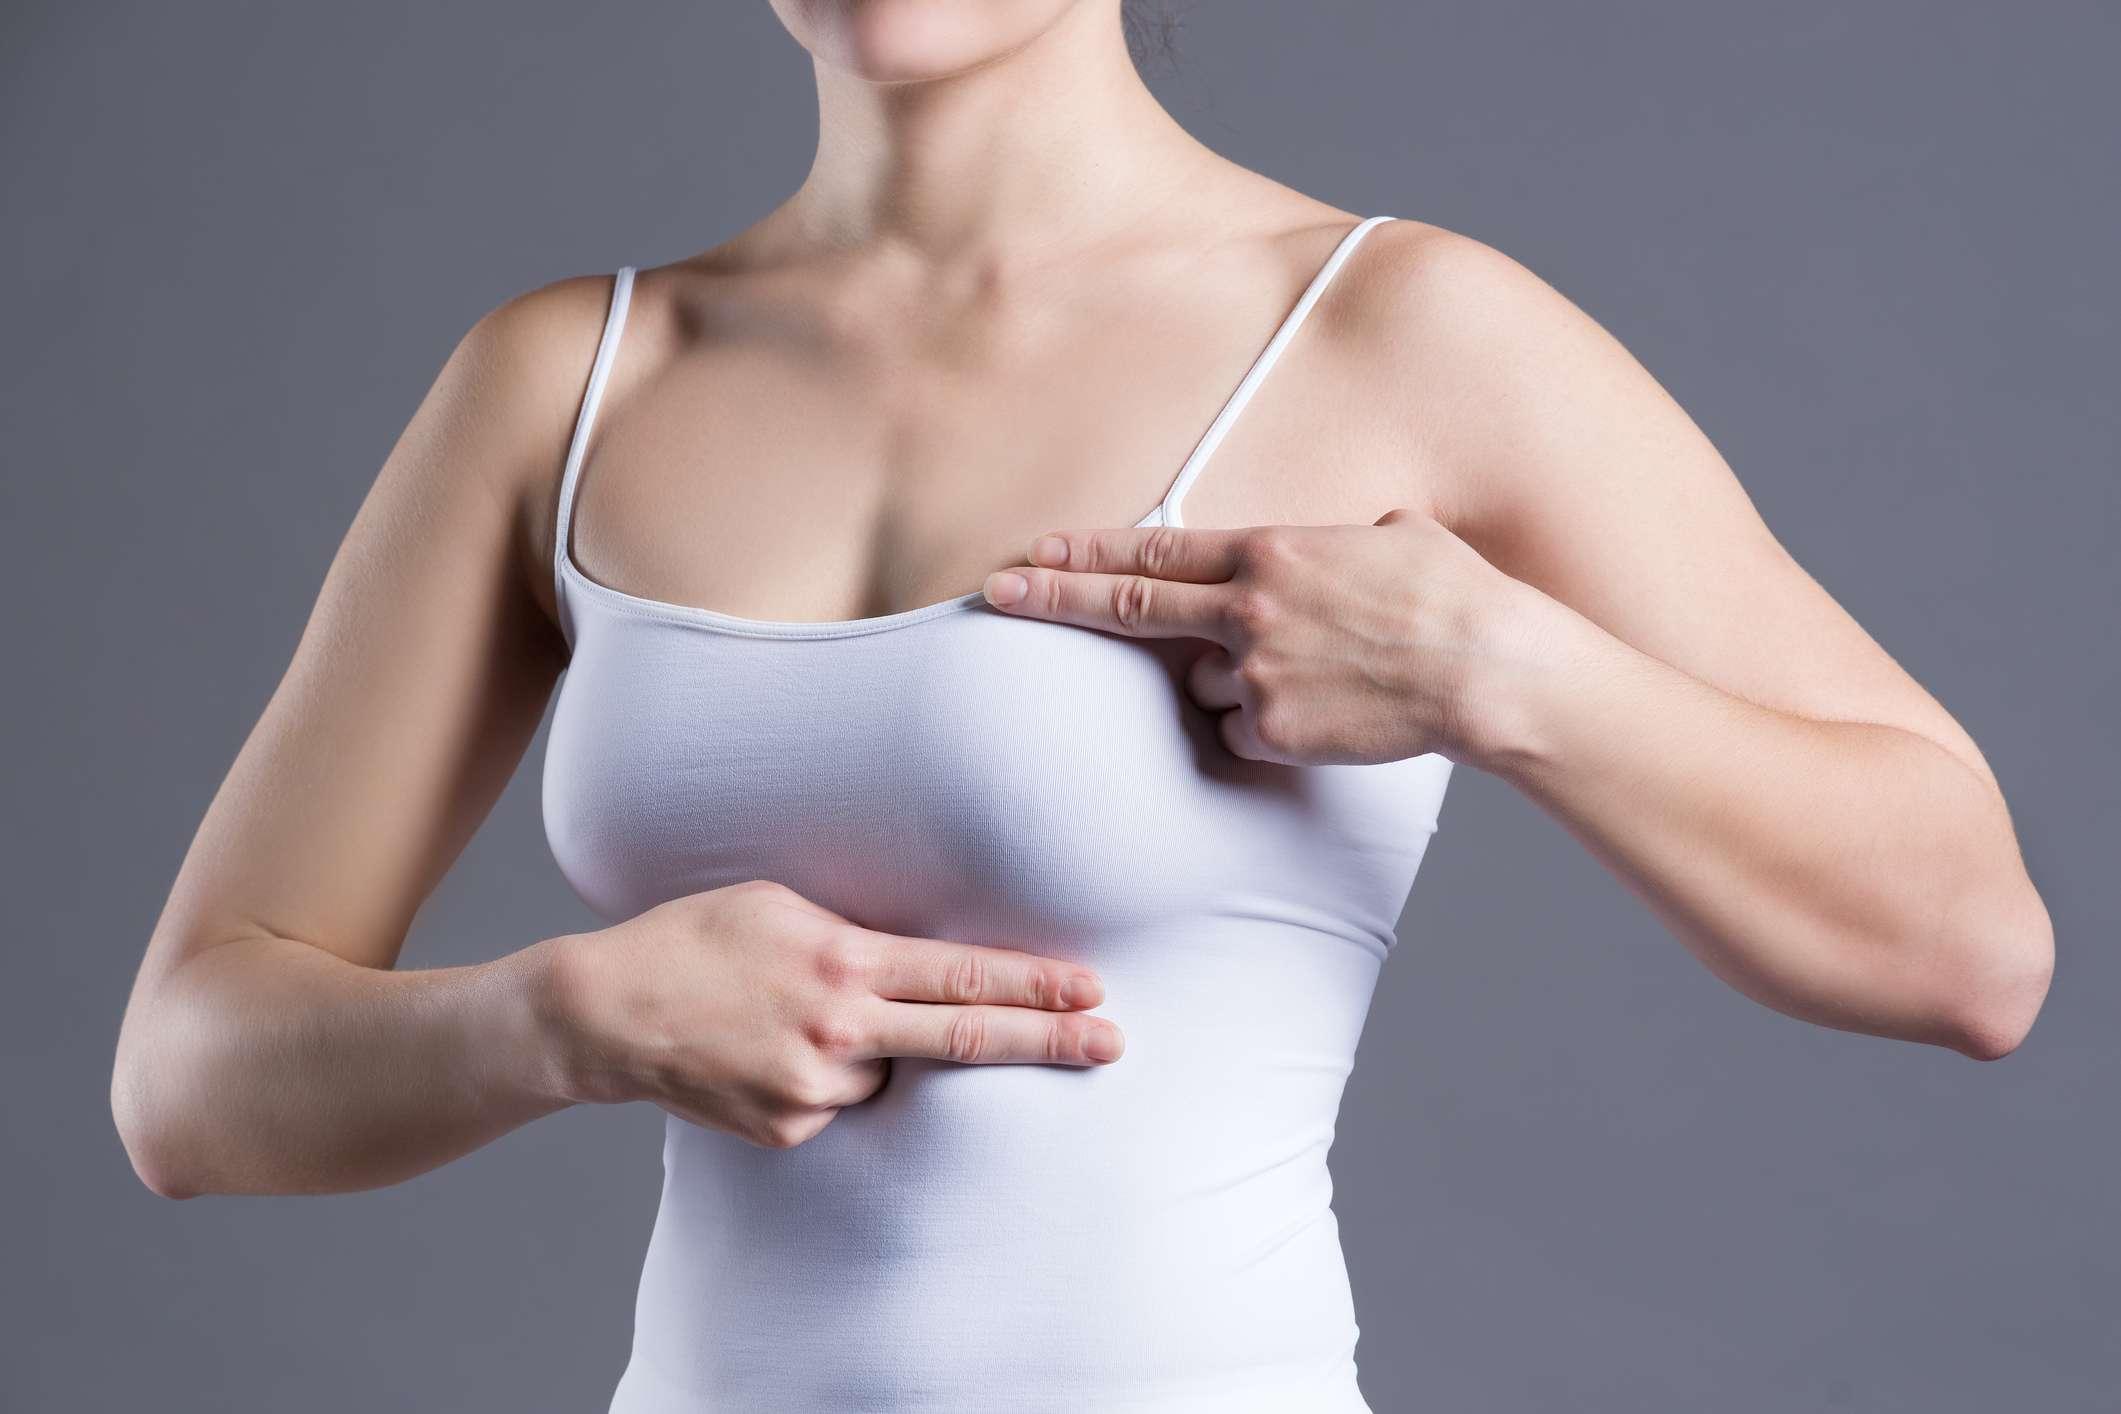 Brusttest, Frau untersucht ihre Brüste auf Krebs, Herzinfarkt, Schmerzen im menschlichen Körper auf grauem Hintergrund